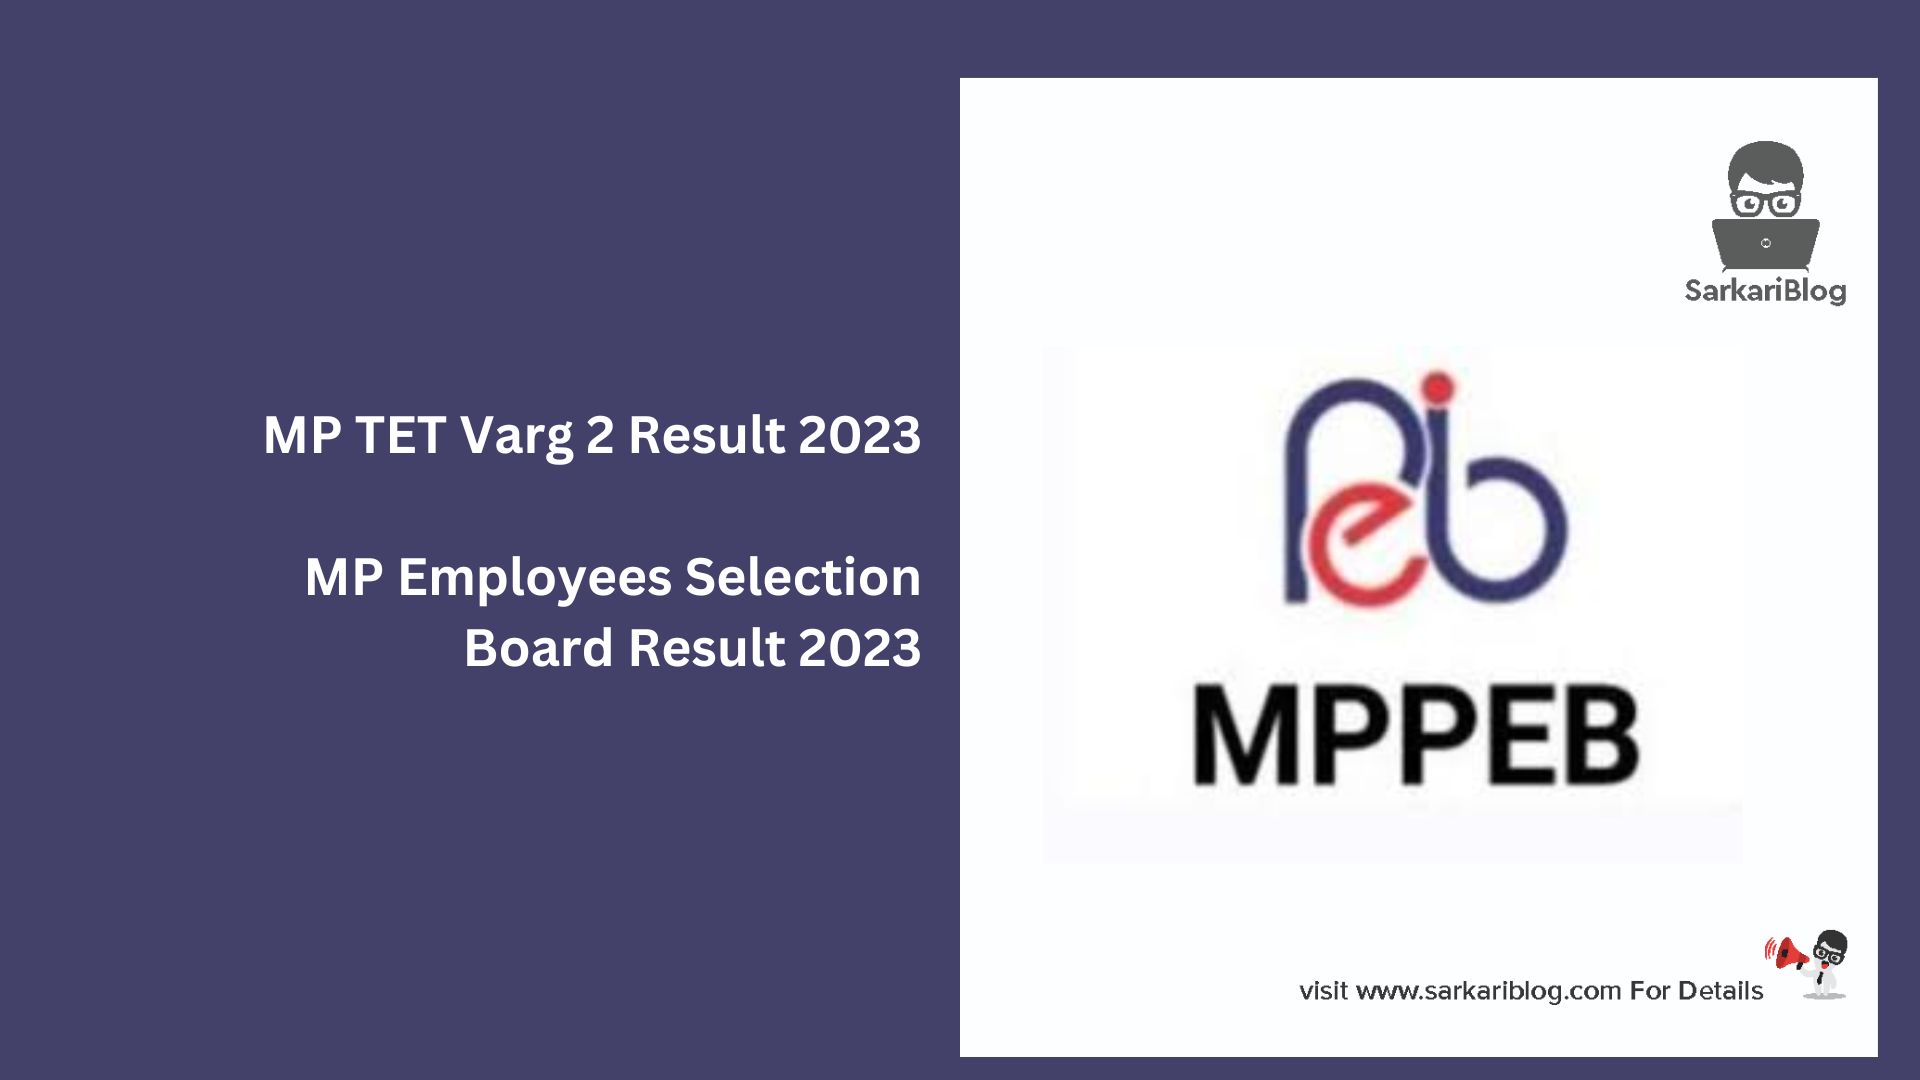 MP TET Varg 2 Result 2023